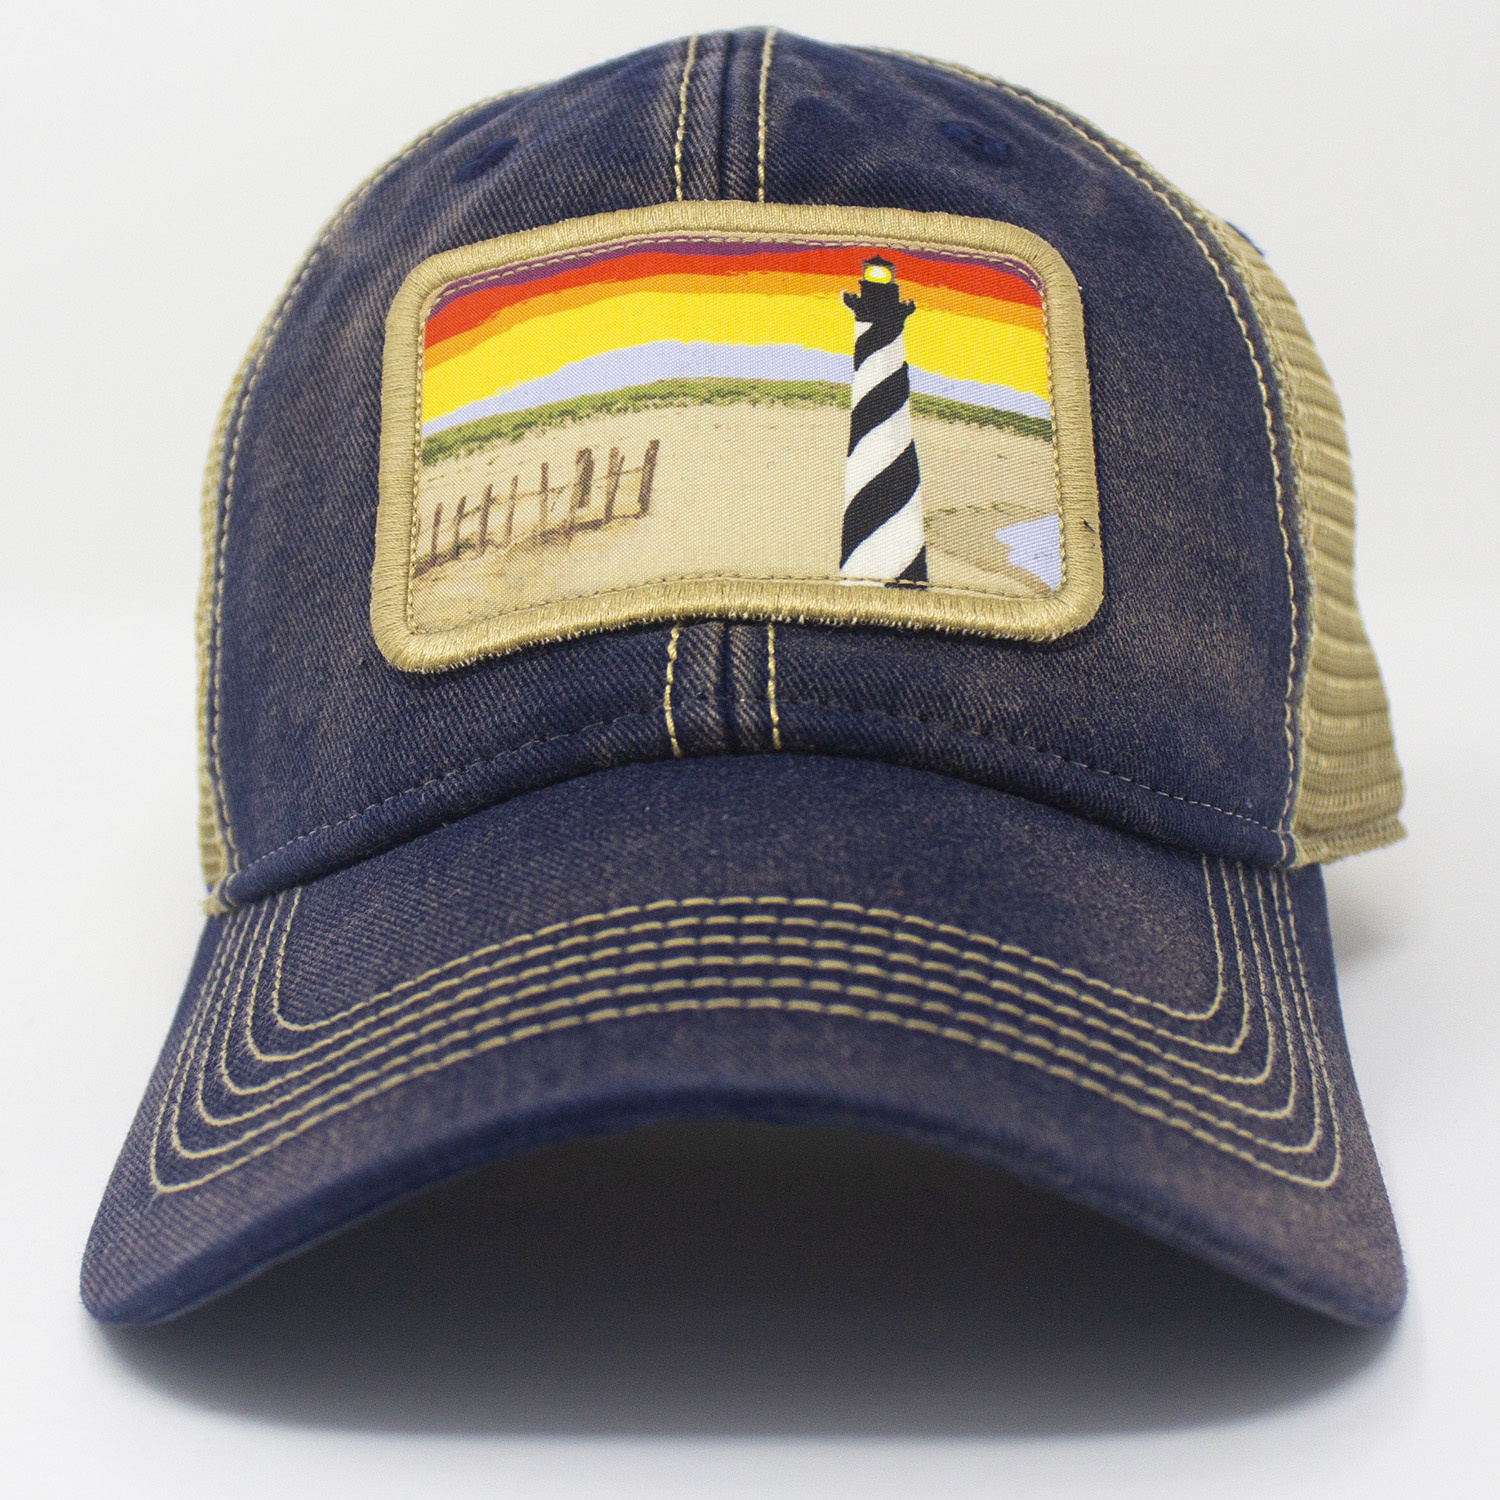 Good Morning Cape Hatteras Trucker Hat, Navy-2